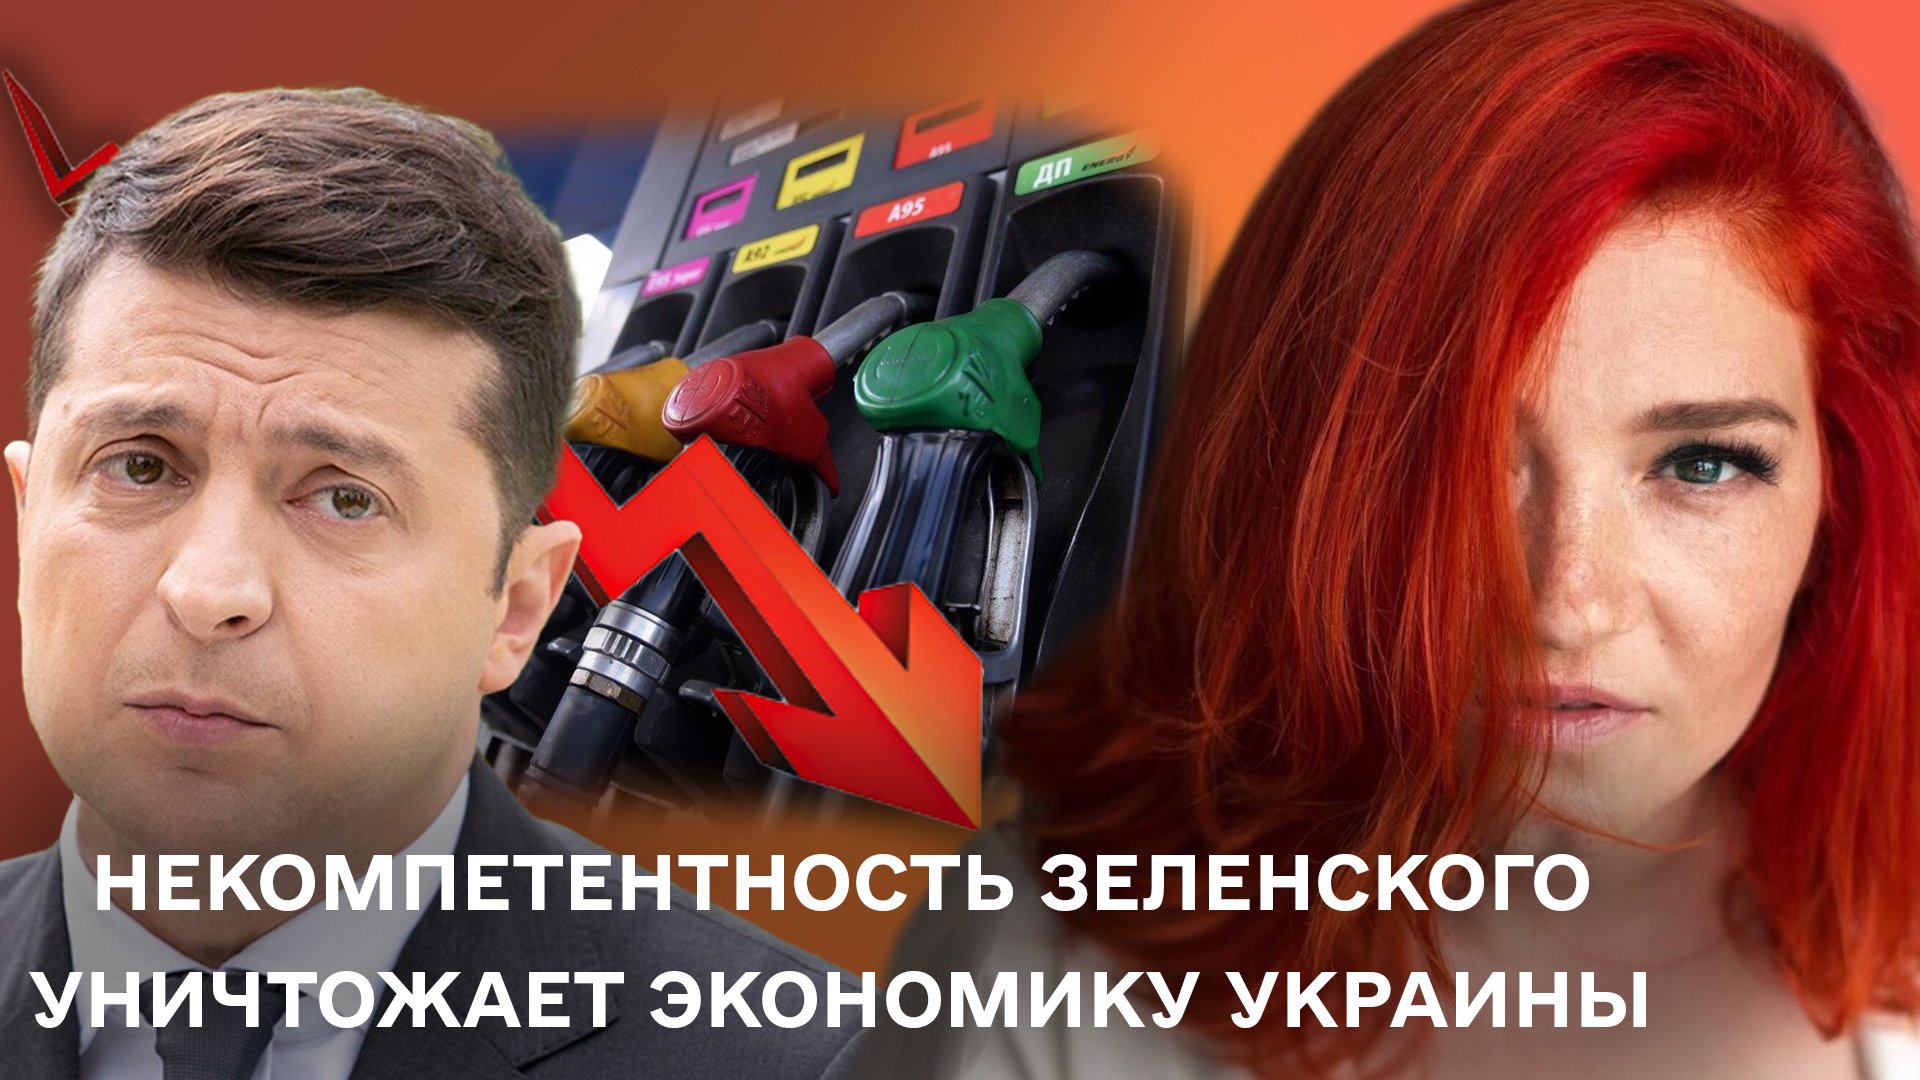 Регулирование цен на топливо, способ убить экономику Украины: сюрпризы от Зеленского